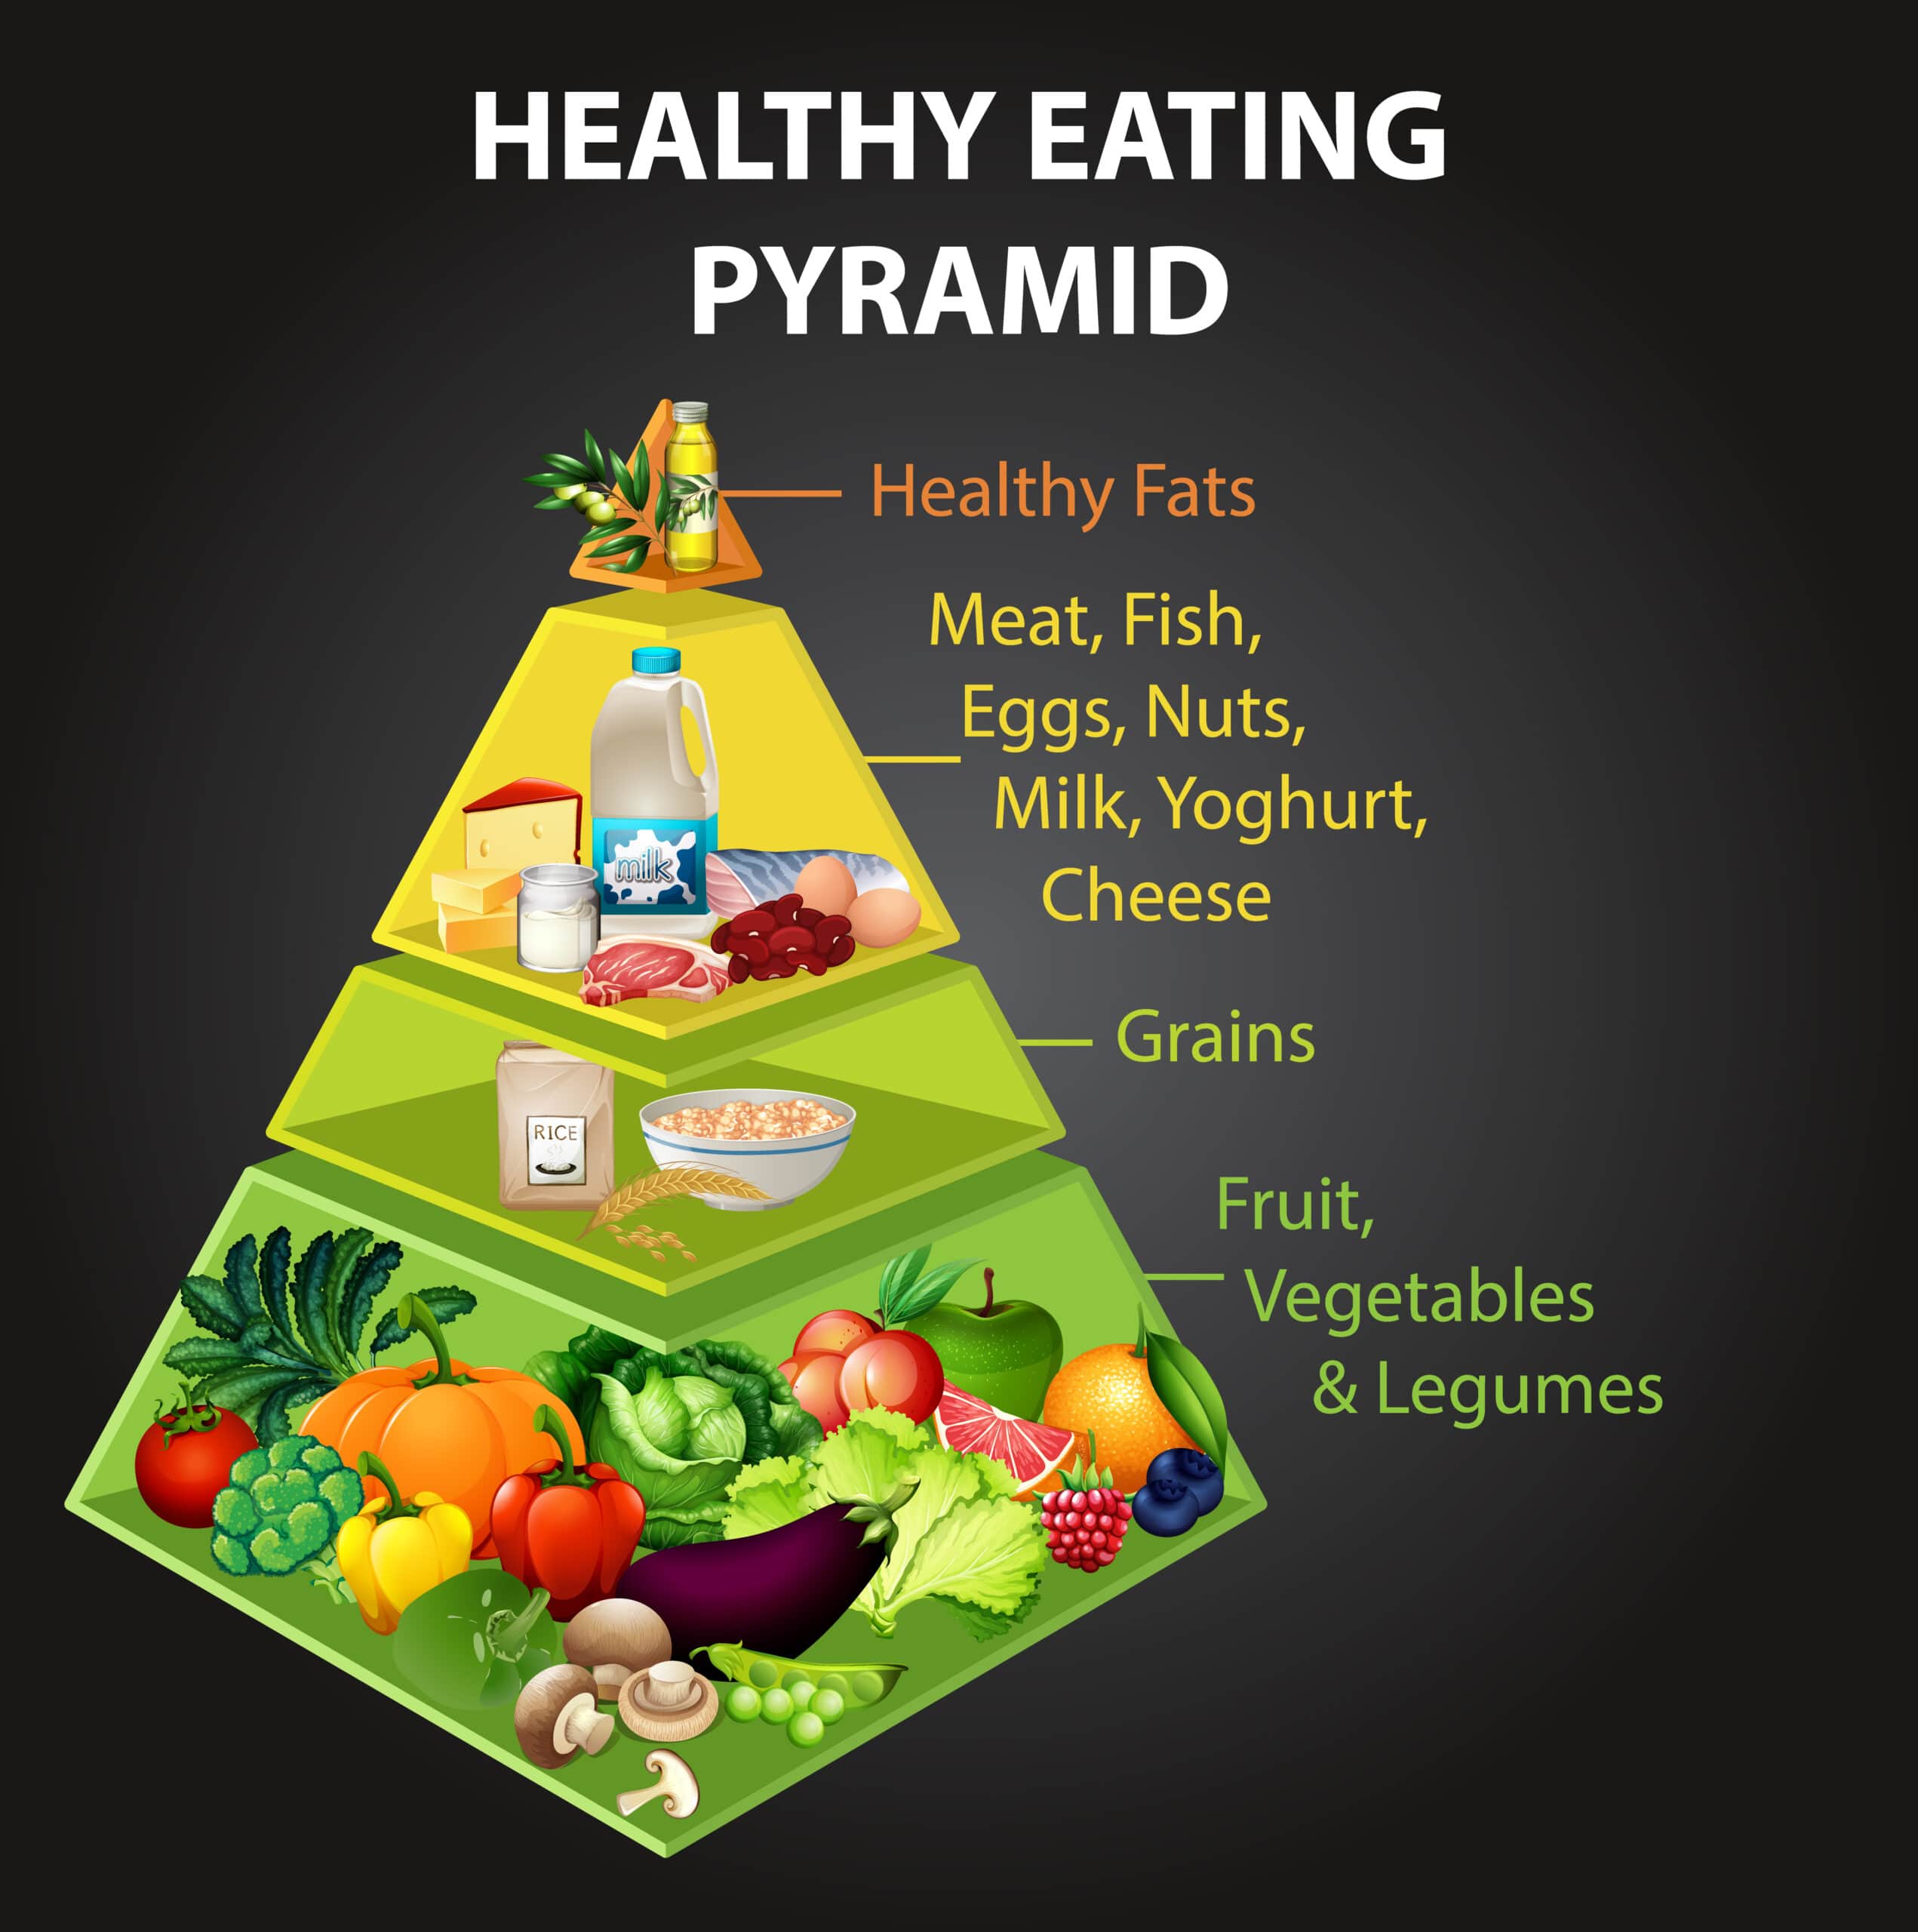 Healthy eating pyramid chart